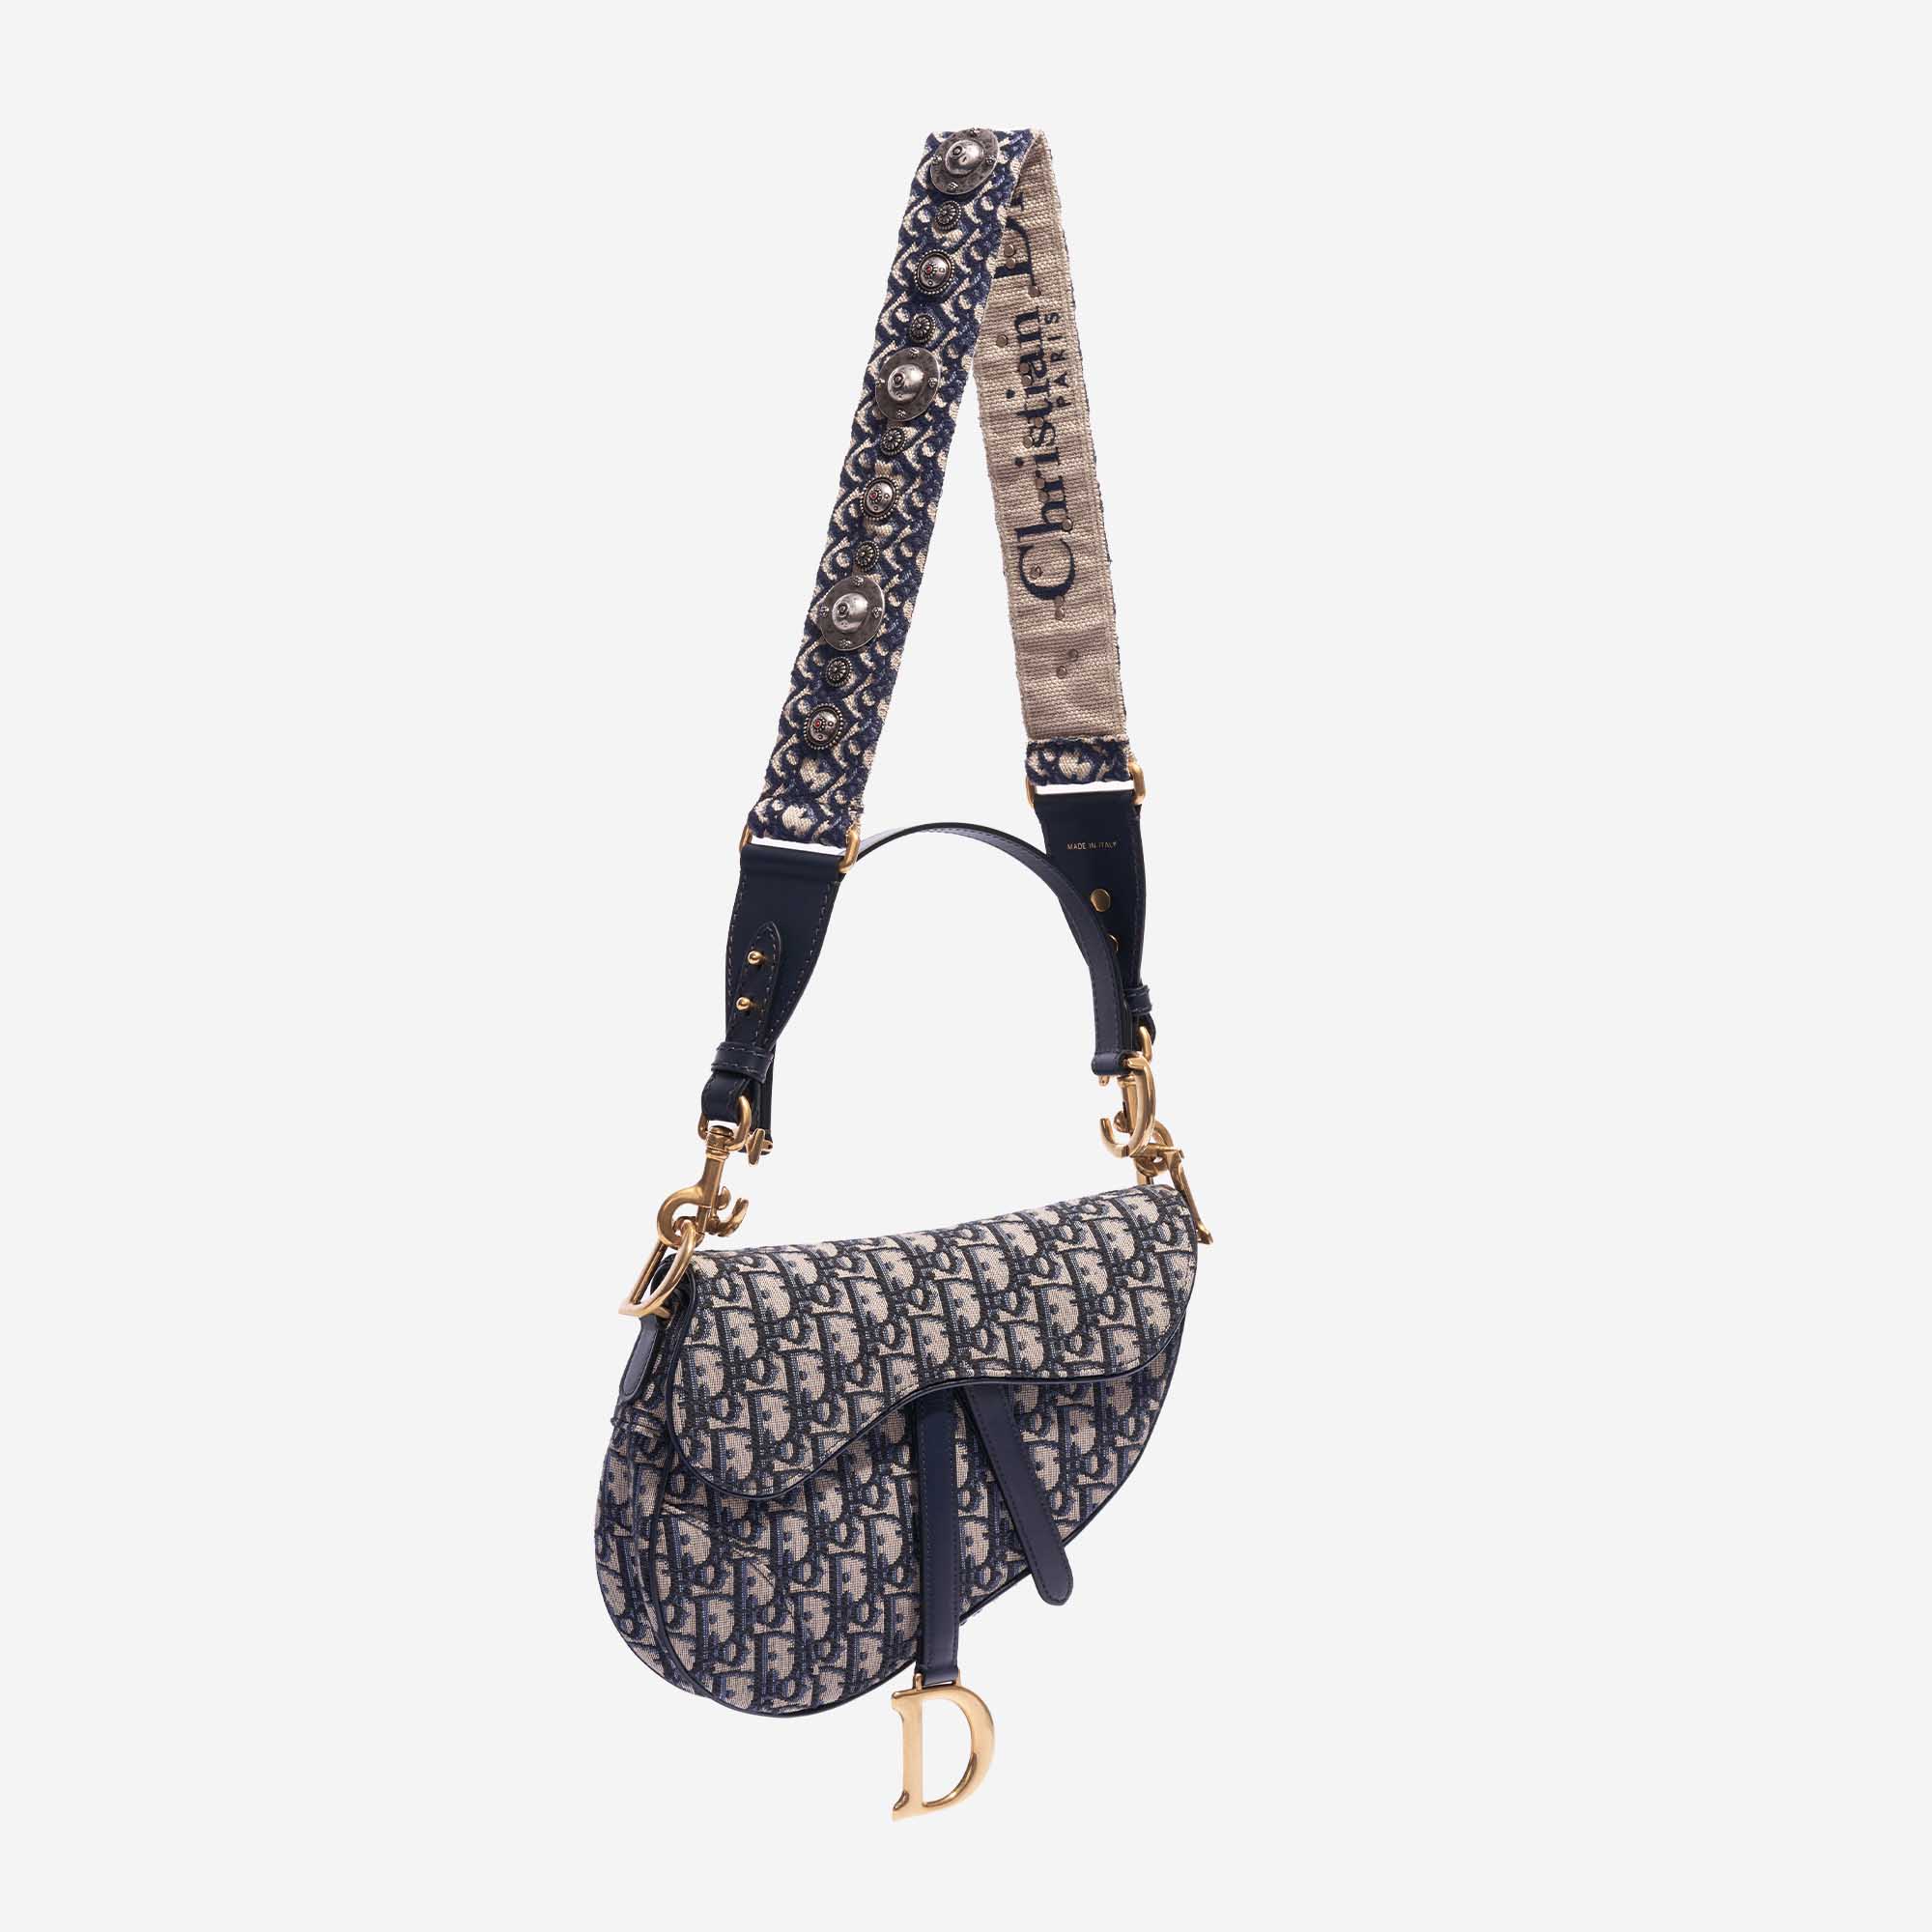 Sac Dior d'occasion épaule bandoulière Broderie Oblique Bleu Côté Front | Vendez votre sac de créateur sur Saclab.com